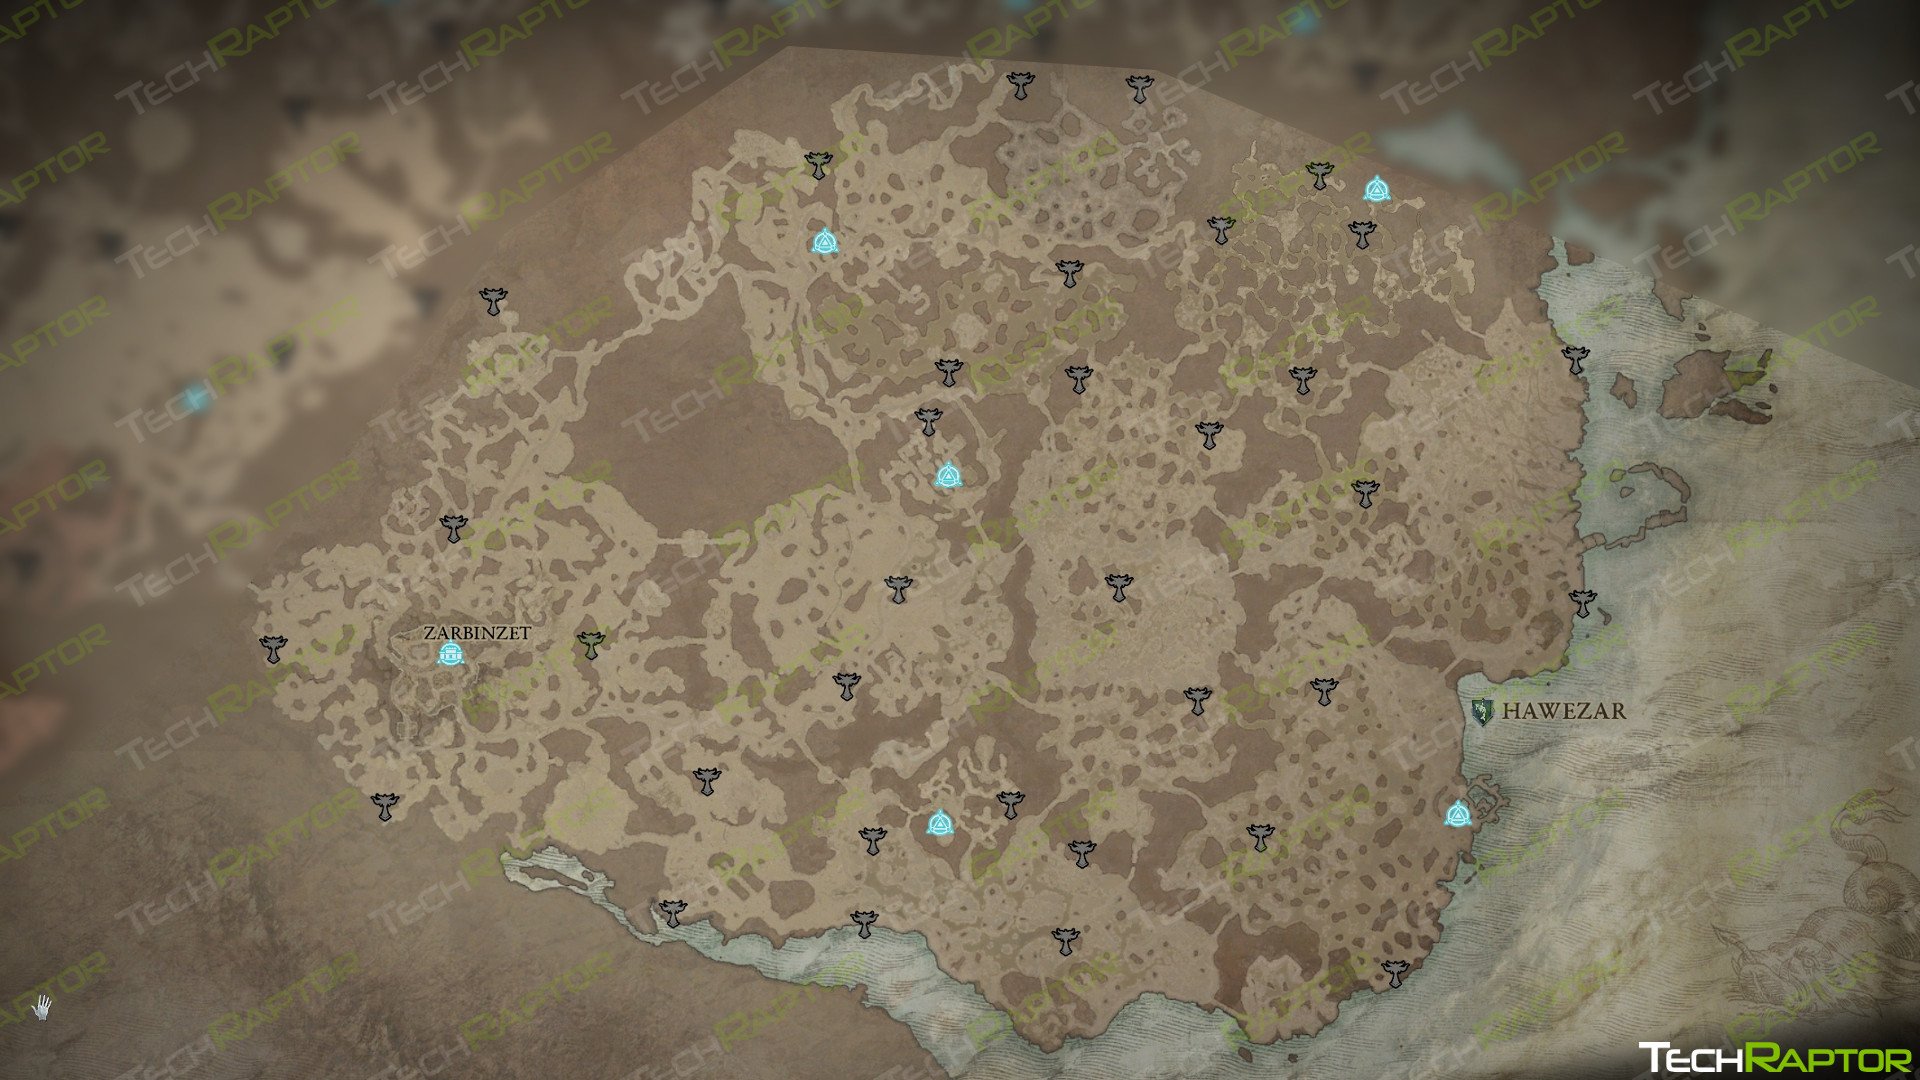 Diablo IV Hawezar Altar of Lilith Locations Guide - Map